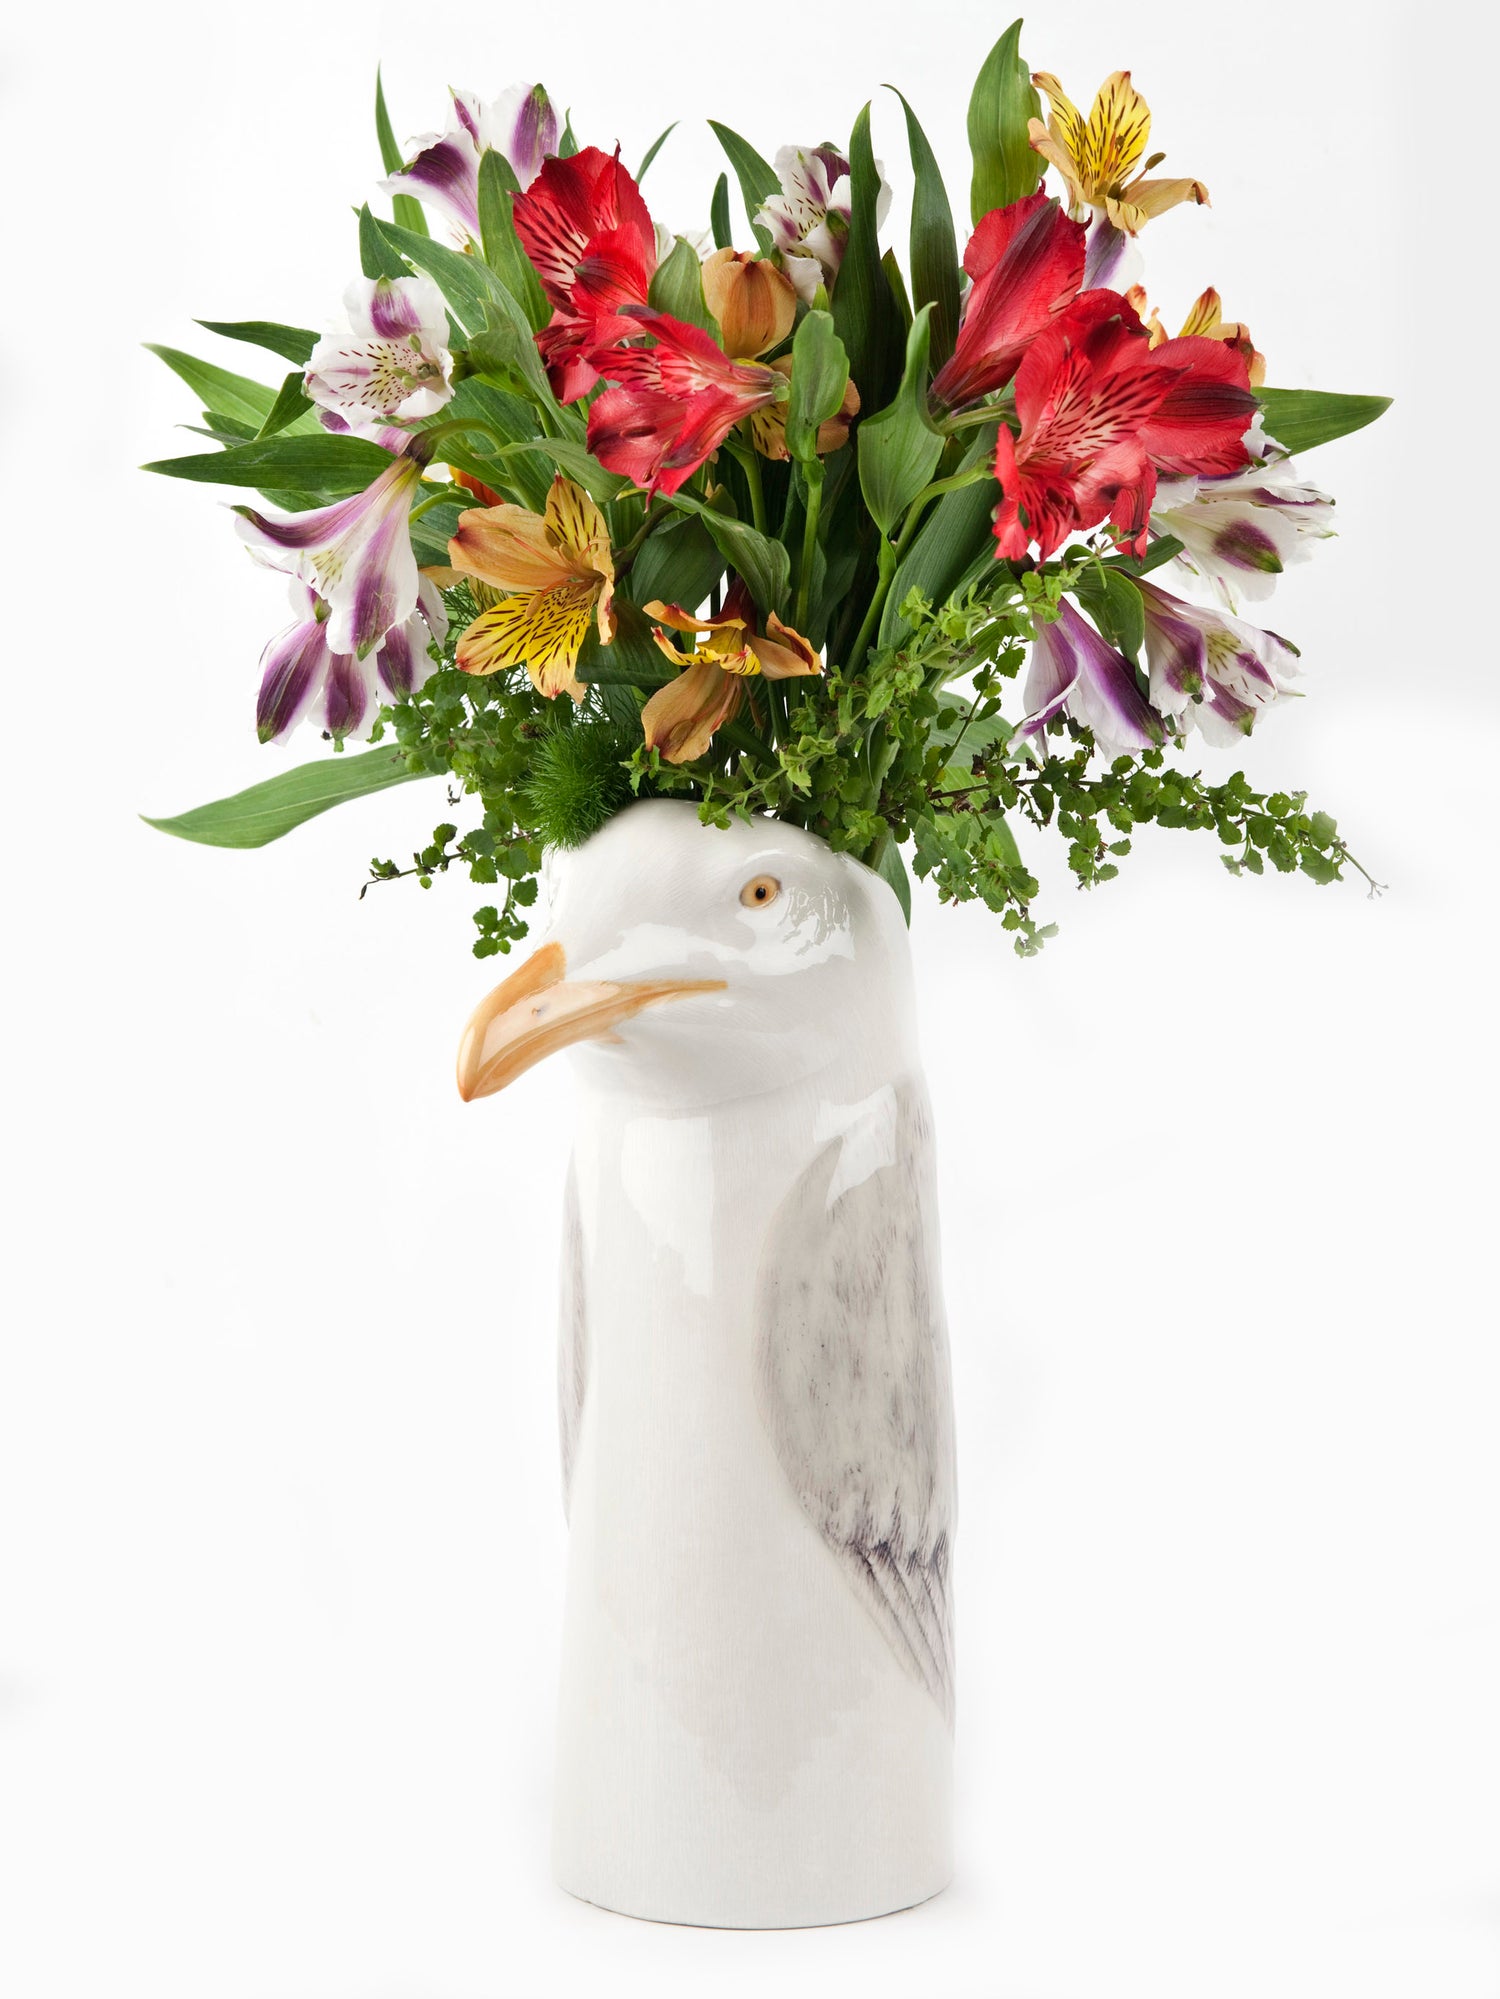 Herring Gull flower vase, large